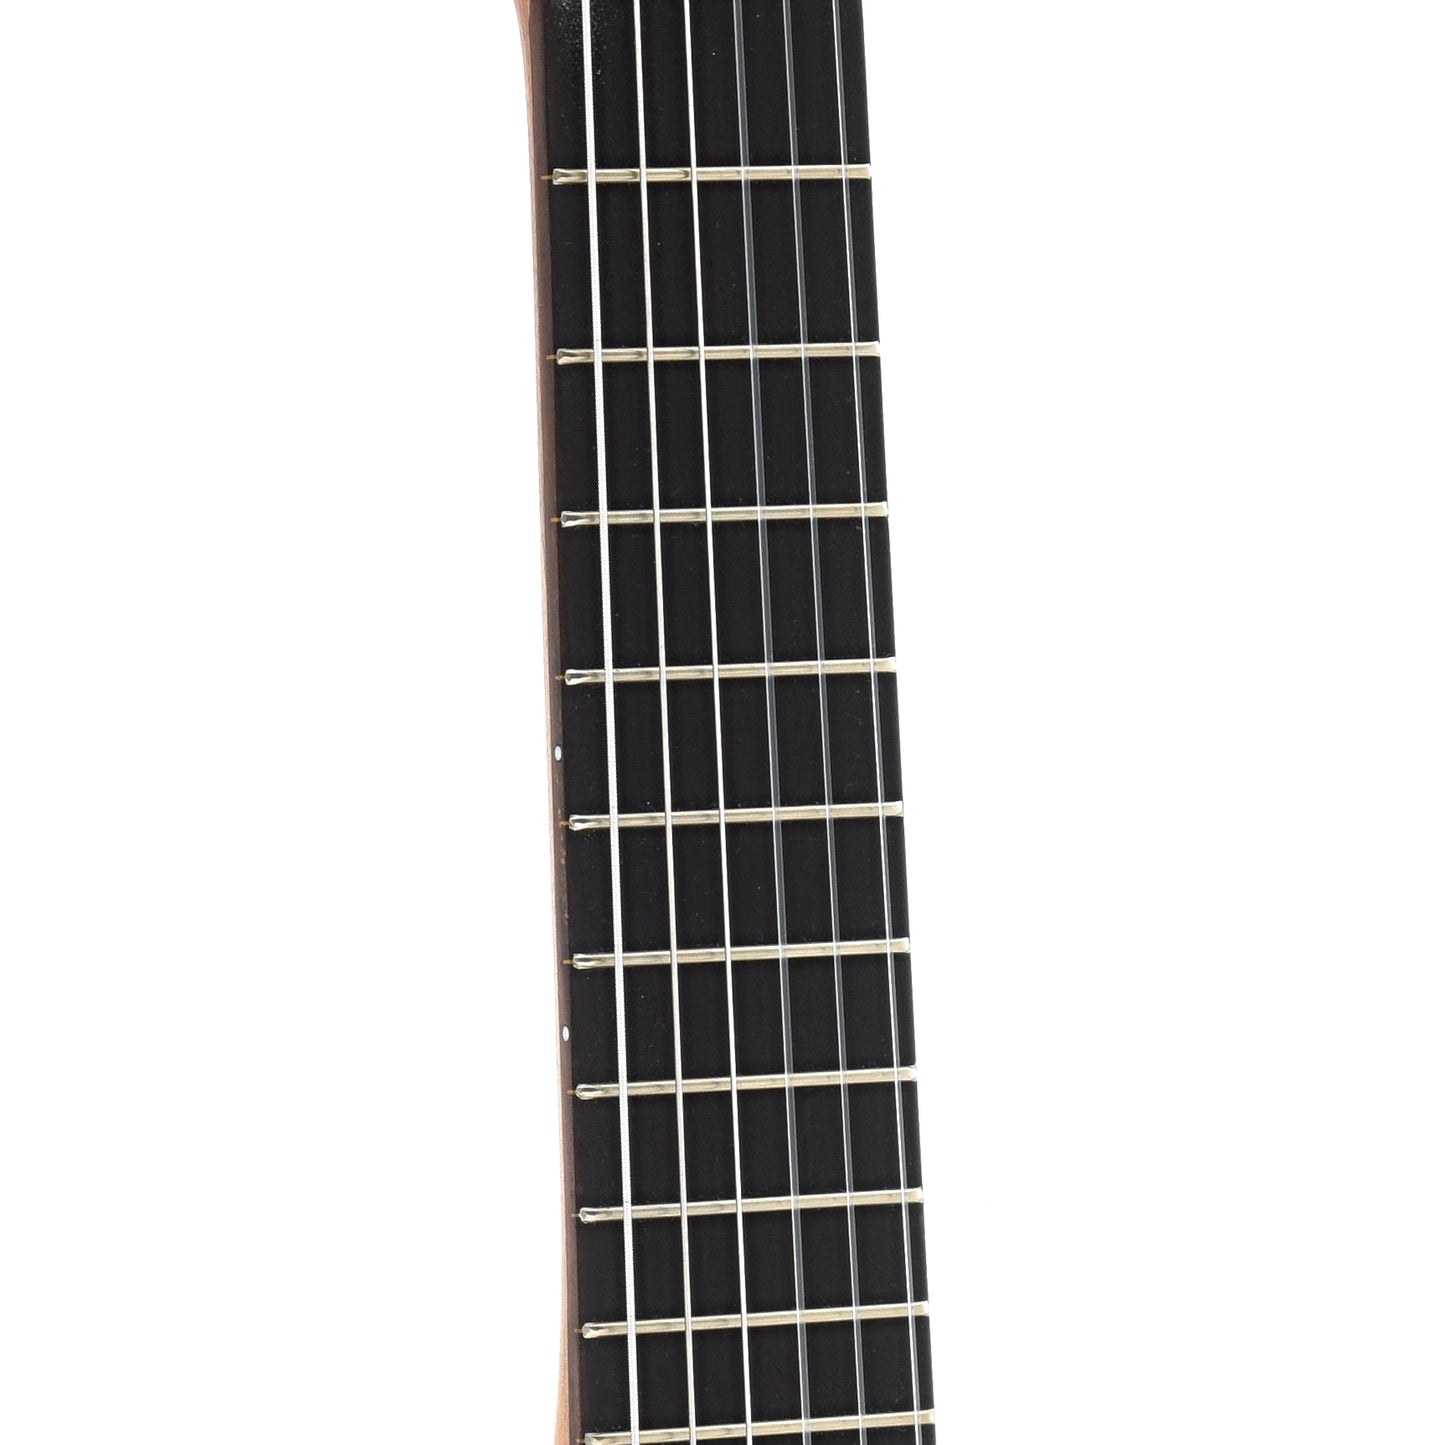 fretboard of Yamaha GL1 Guitalele Guitar Ukulele